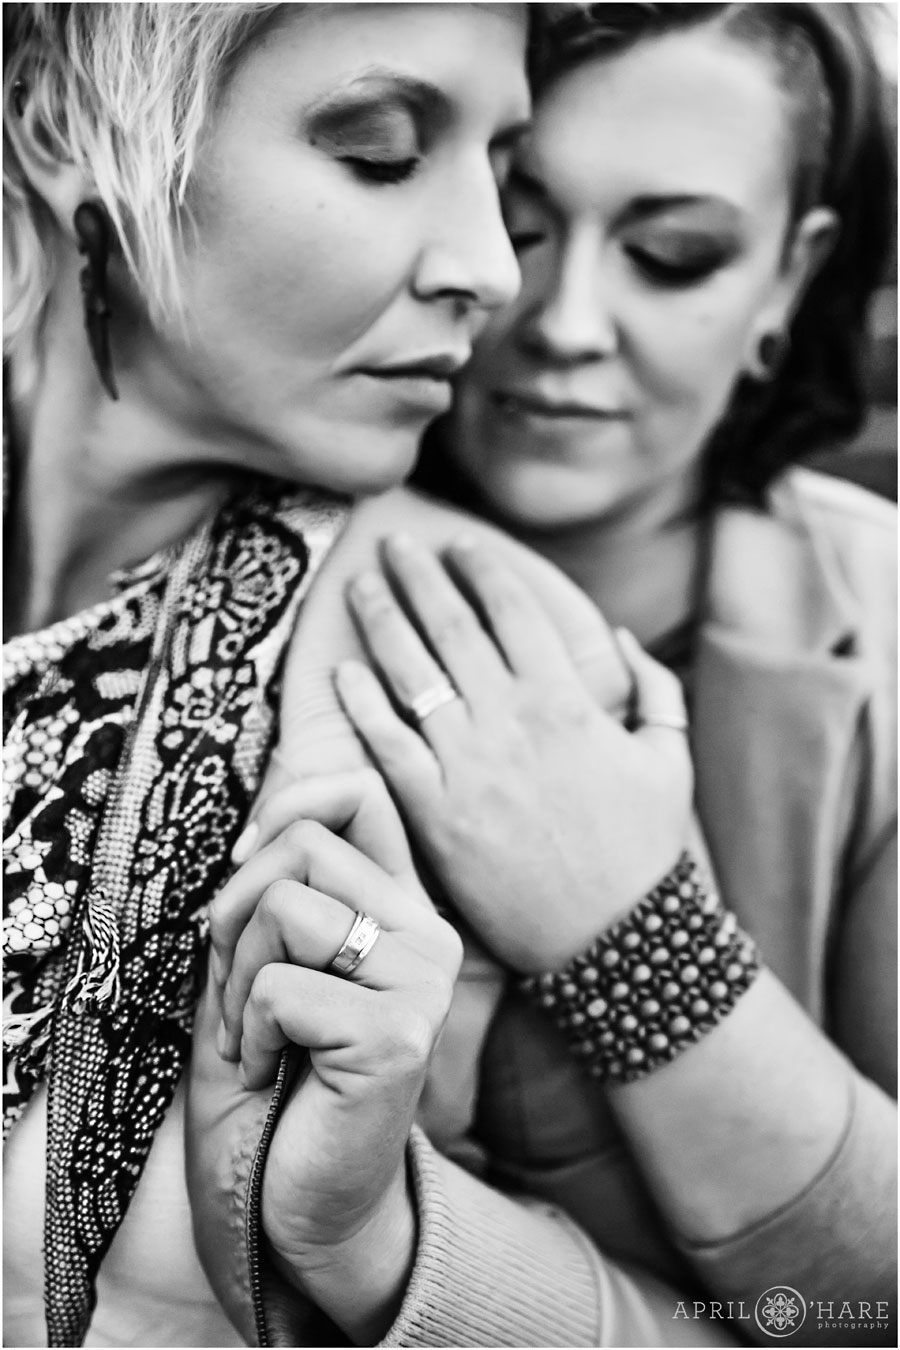 Romantic B&W lesbian engagement portrait